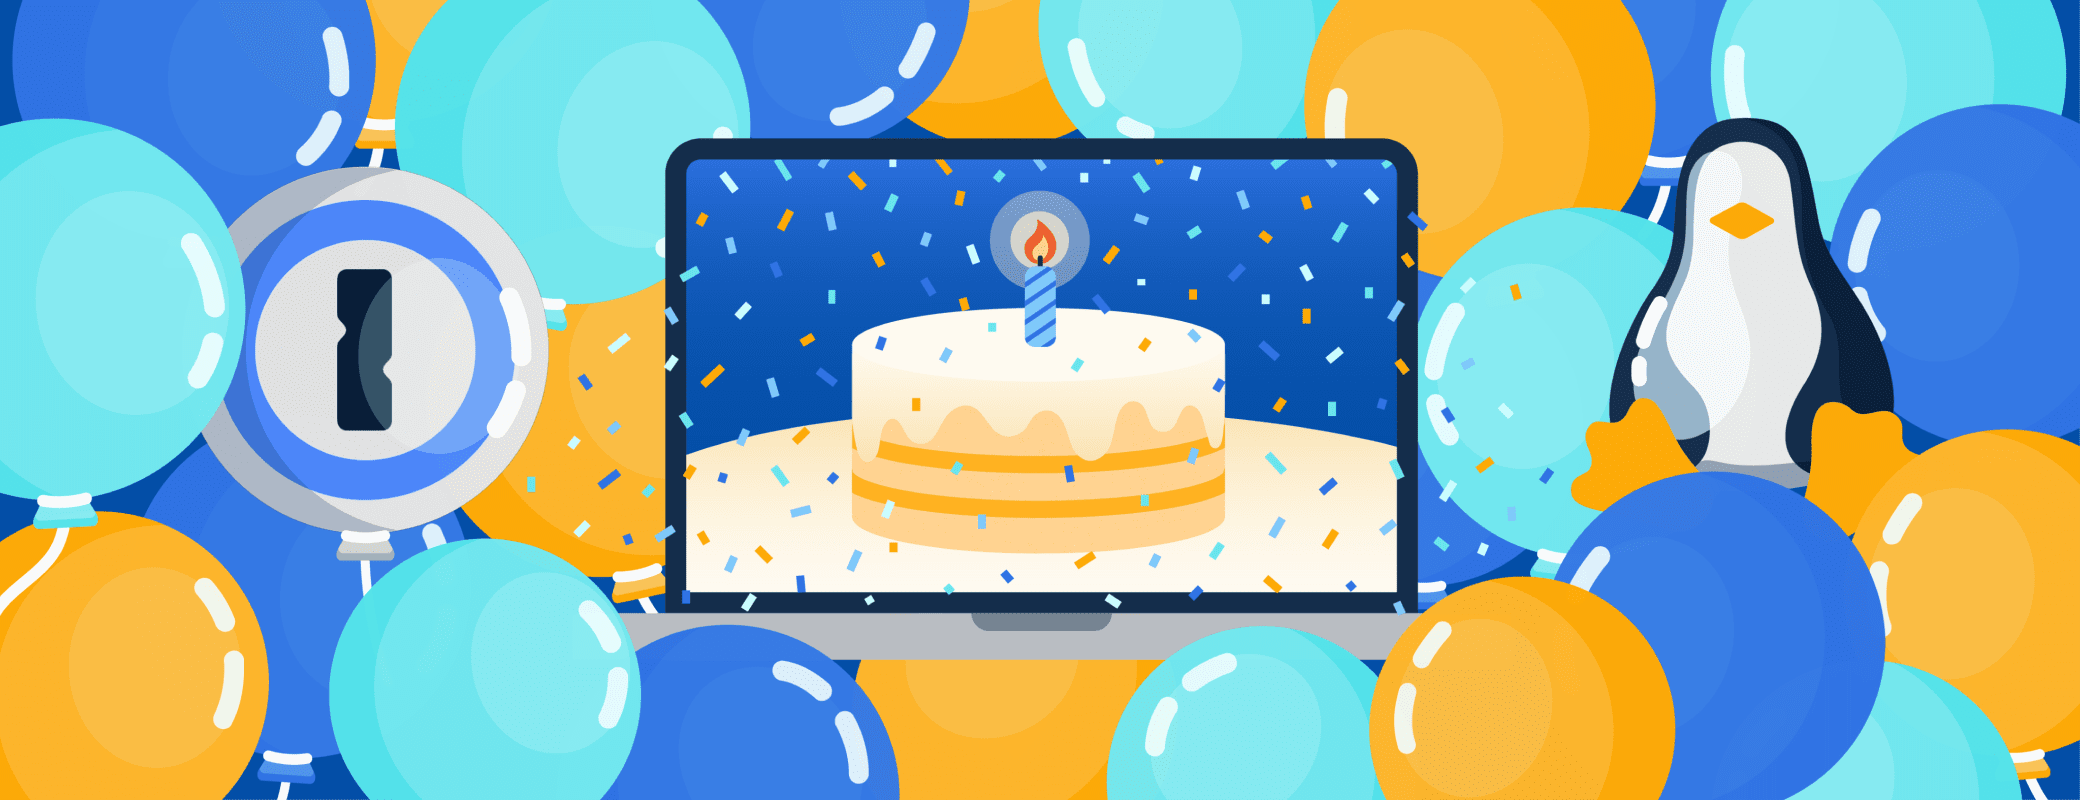 Happy birthday, 1Password for Linux! 🎉🥳